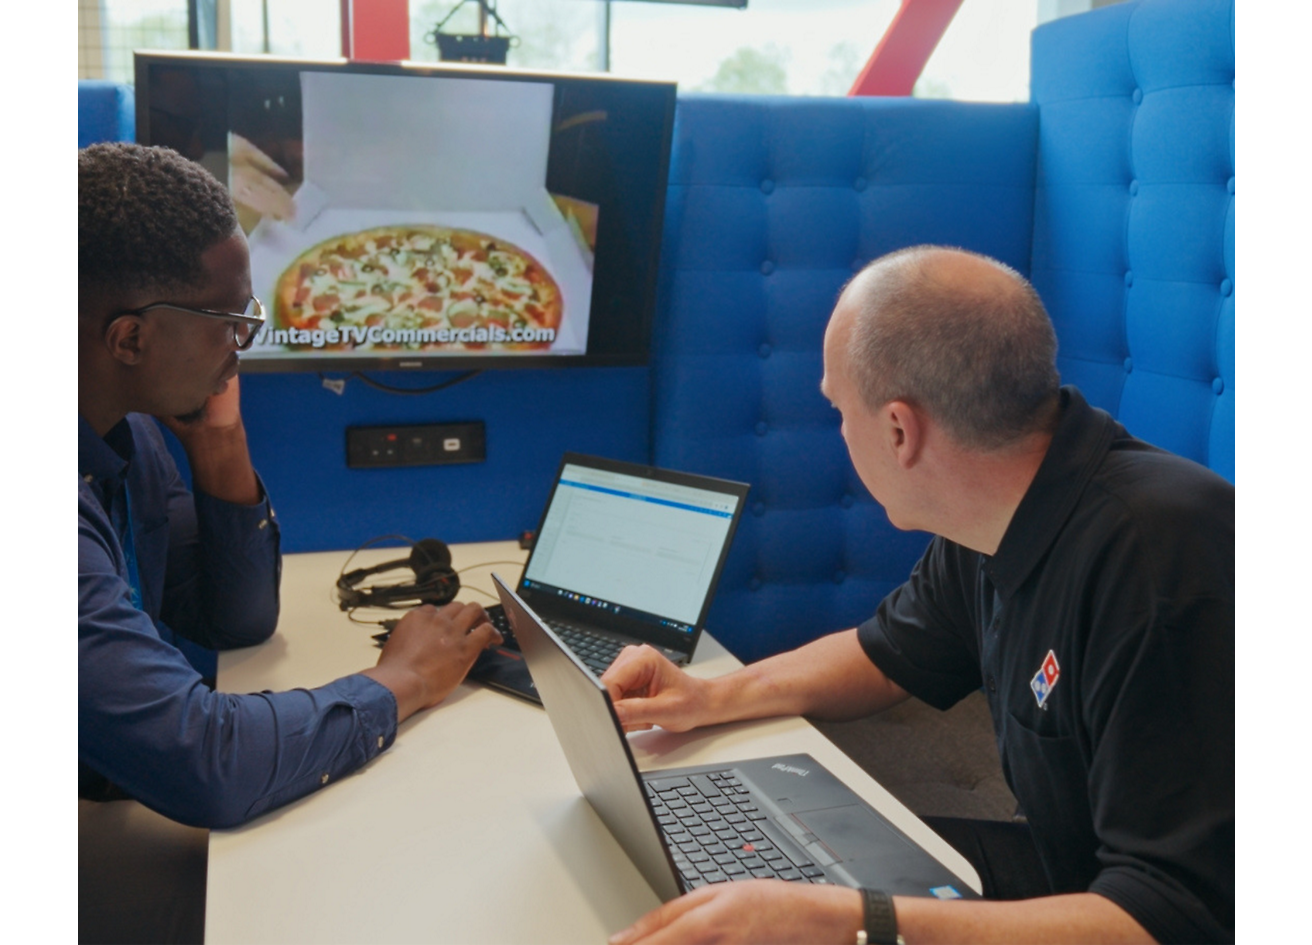 Twee personen die bij een laptop zitten en die praten over Domino's pizza